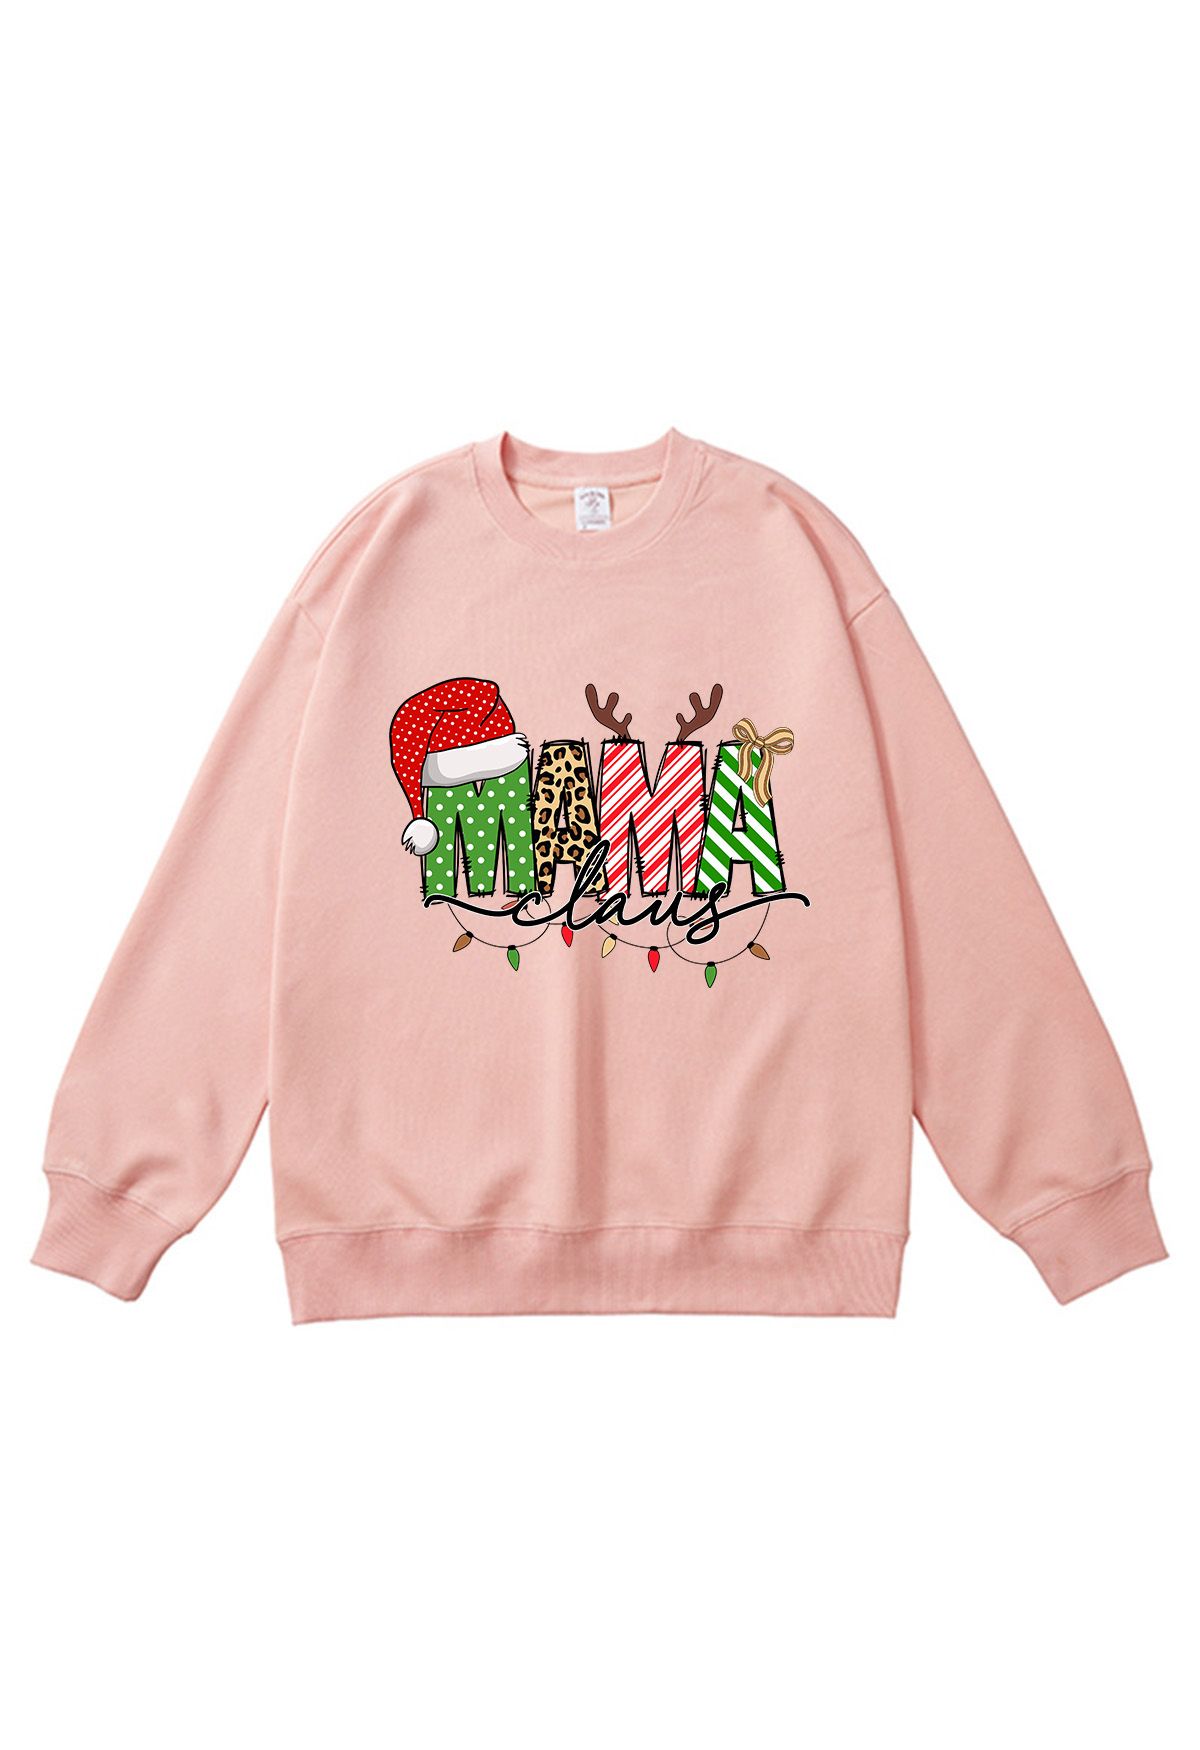 Bedrucktes Sweatshirt mit Weihnachtsstimmung und MAMA-Motiv